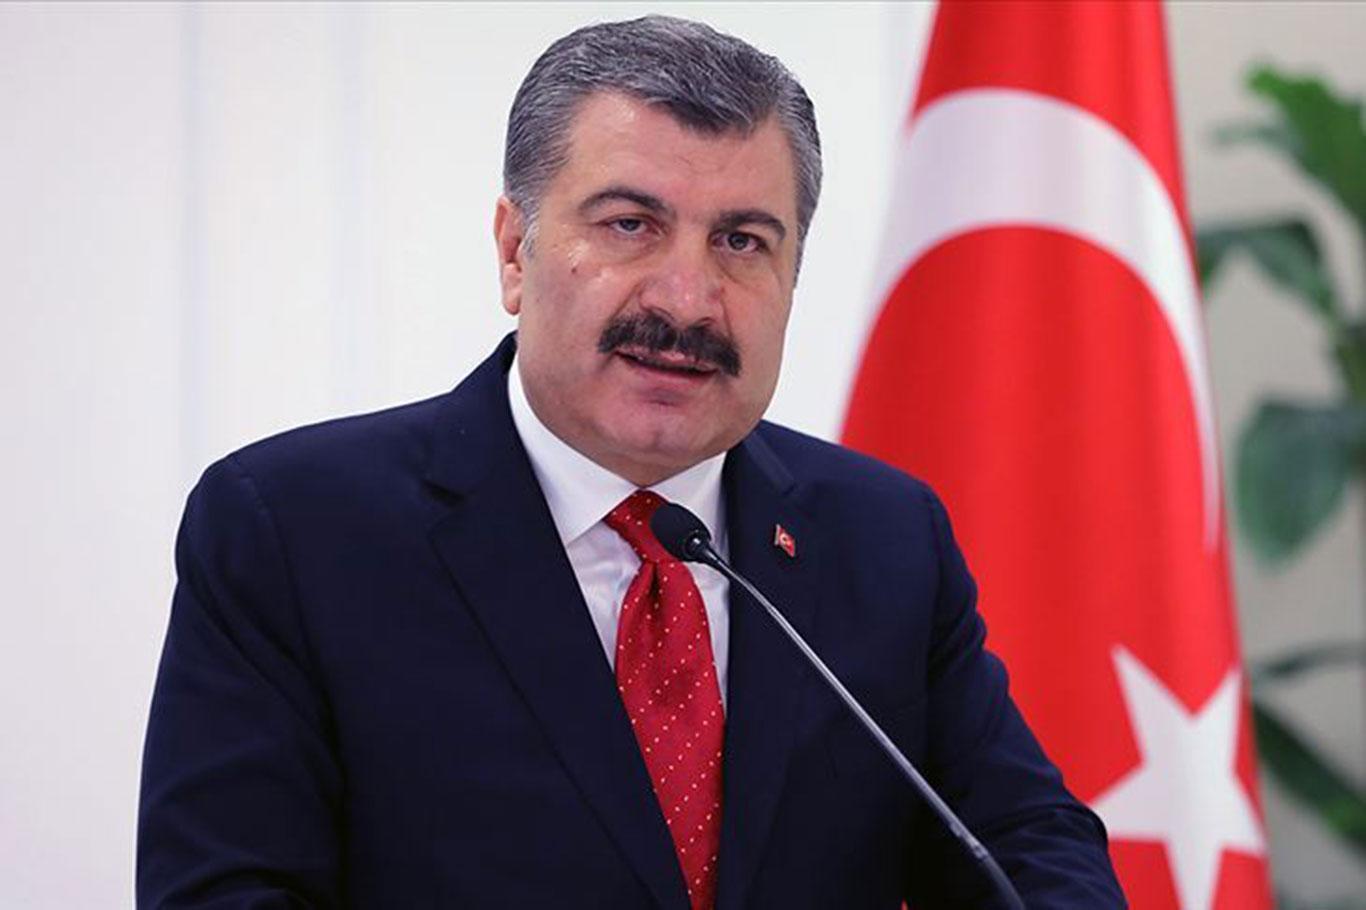 وزير الصحة التركية يعلن وفاة 79 شخص جديد بـ "كوفيد 19" في البلاد